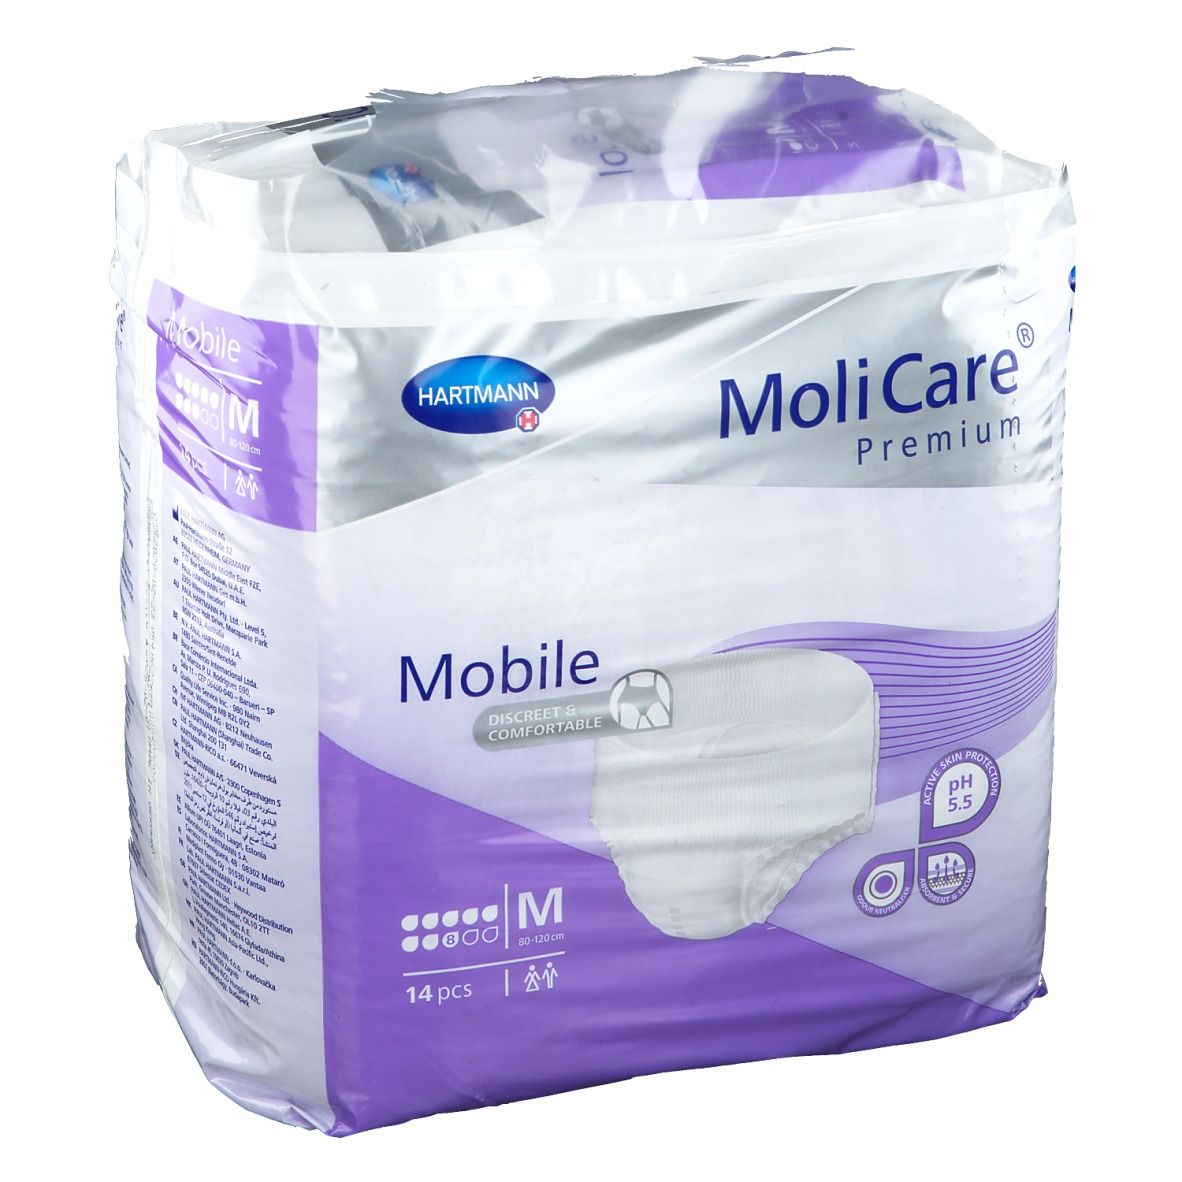 MoliCare® Premium Mobile 8 Tropfen Gr. M